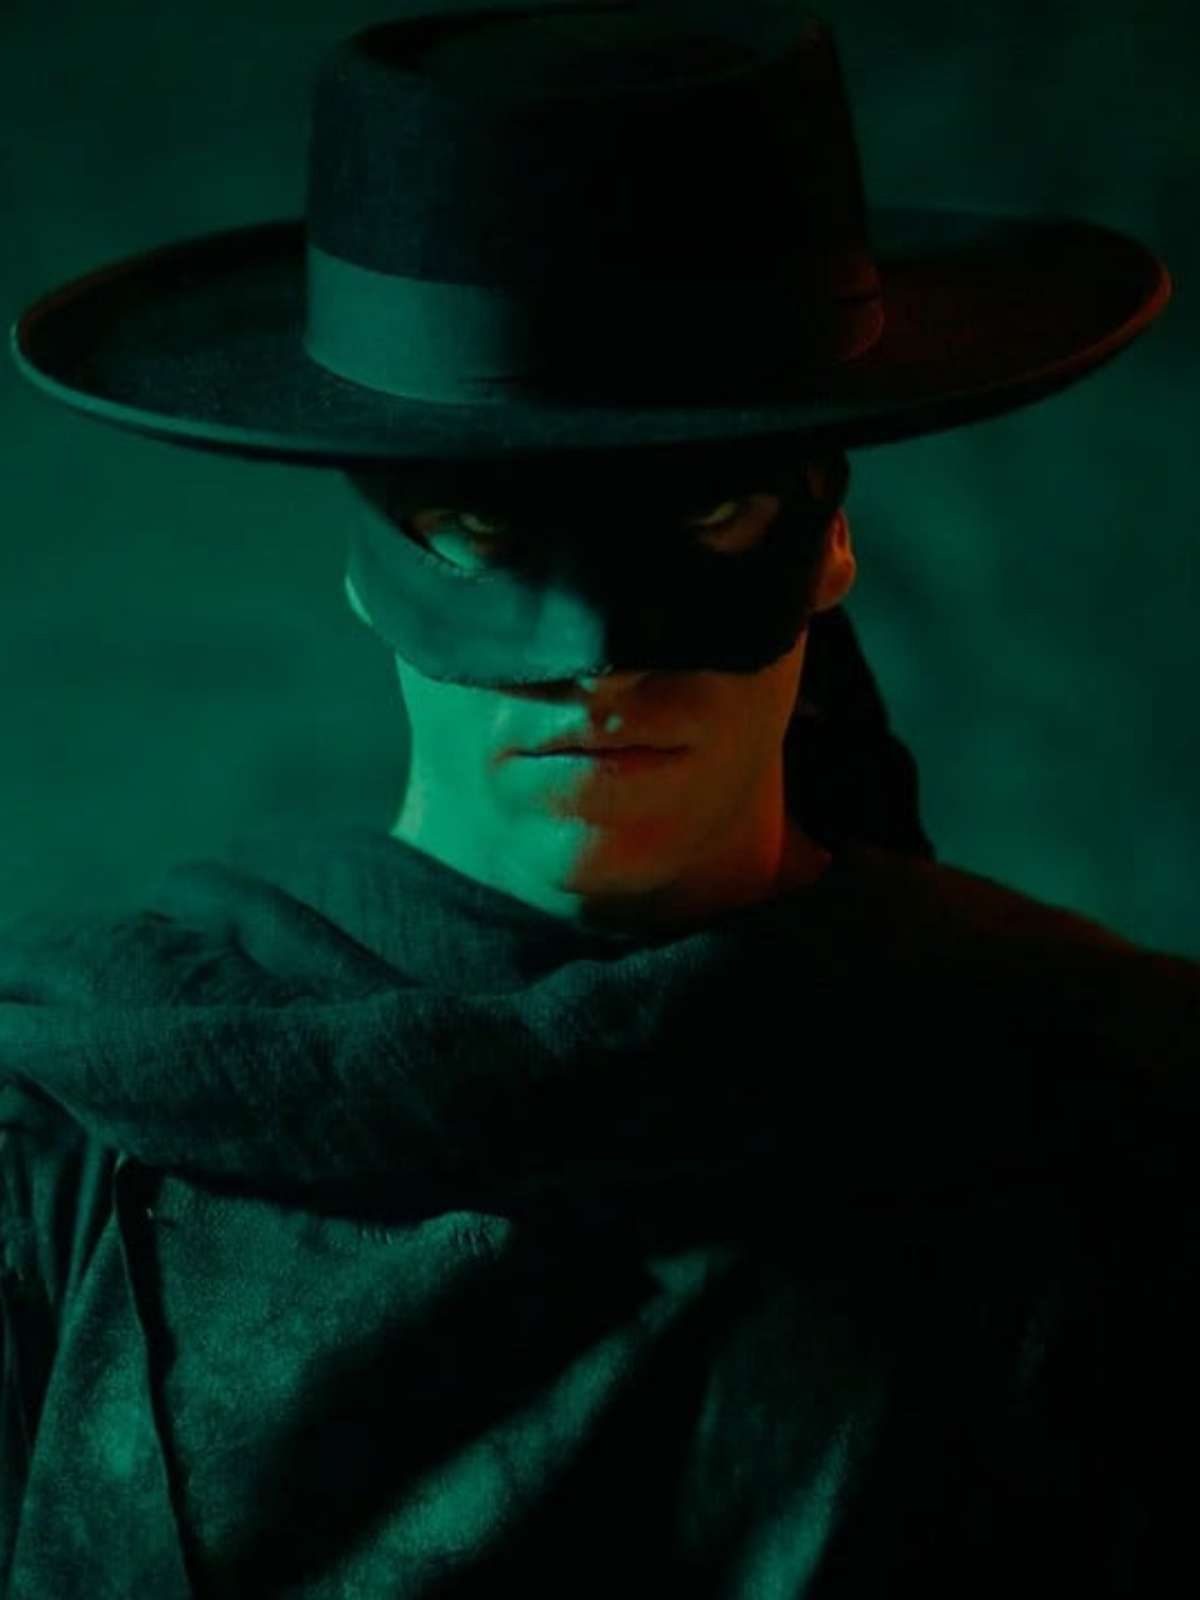 Zorro: O mascarado que encantou gerações - Universo Retrô